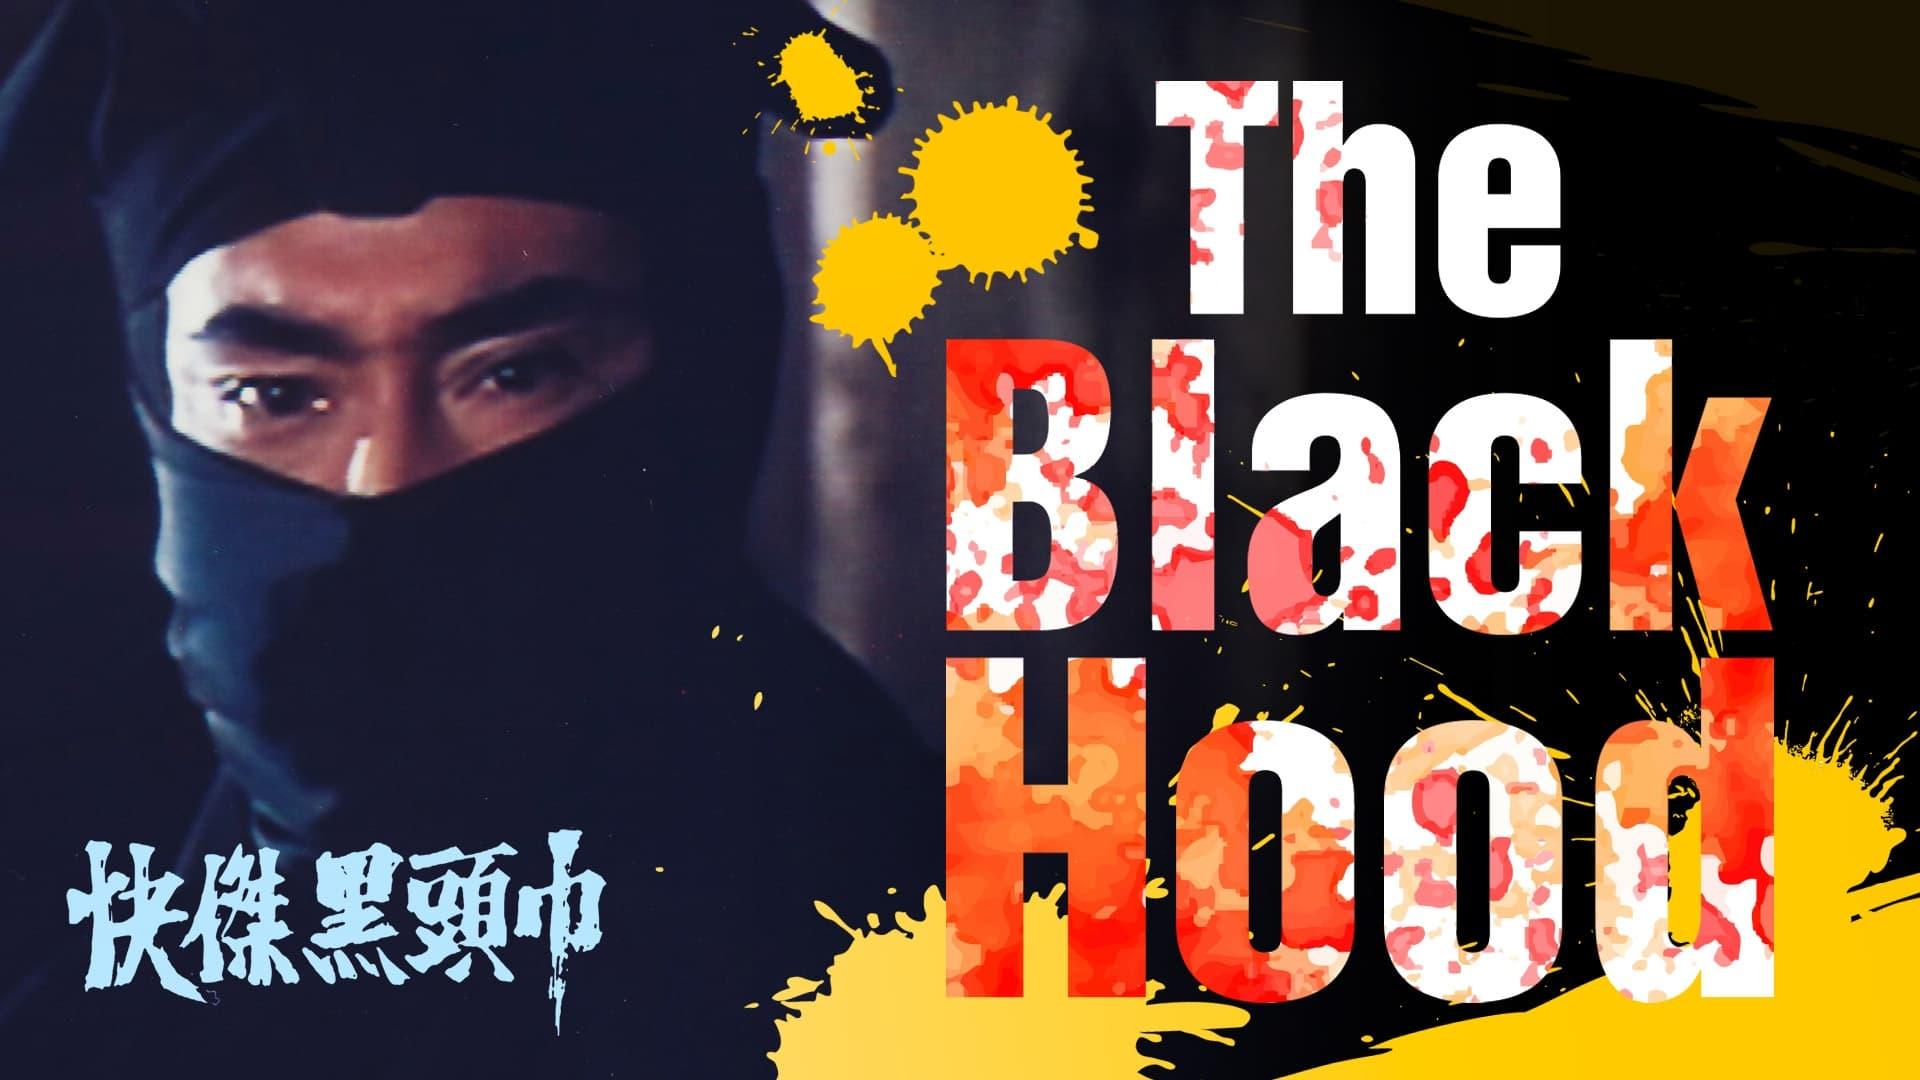 The Black Hood backdrop